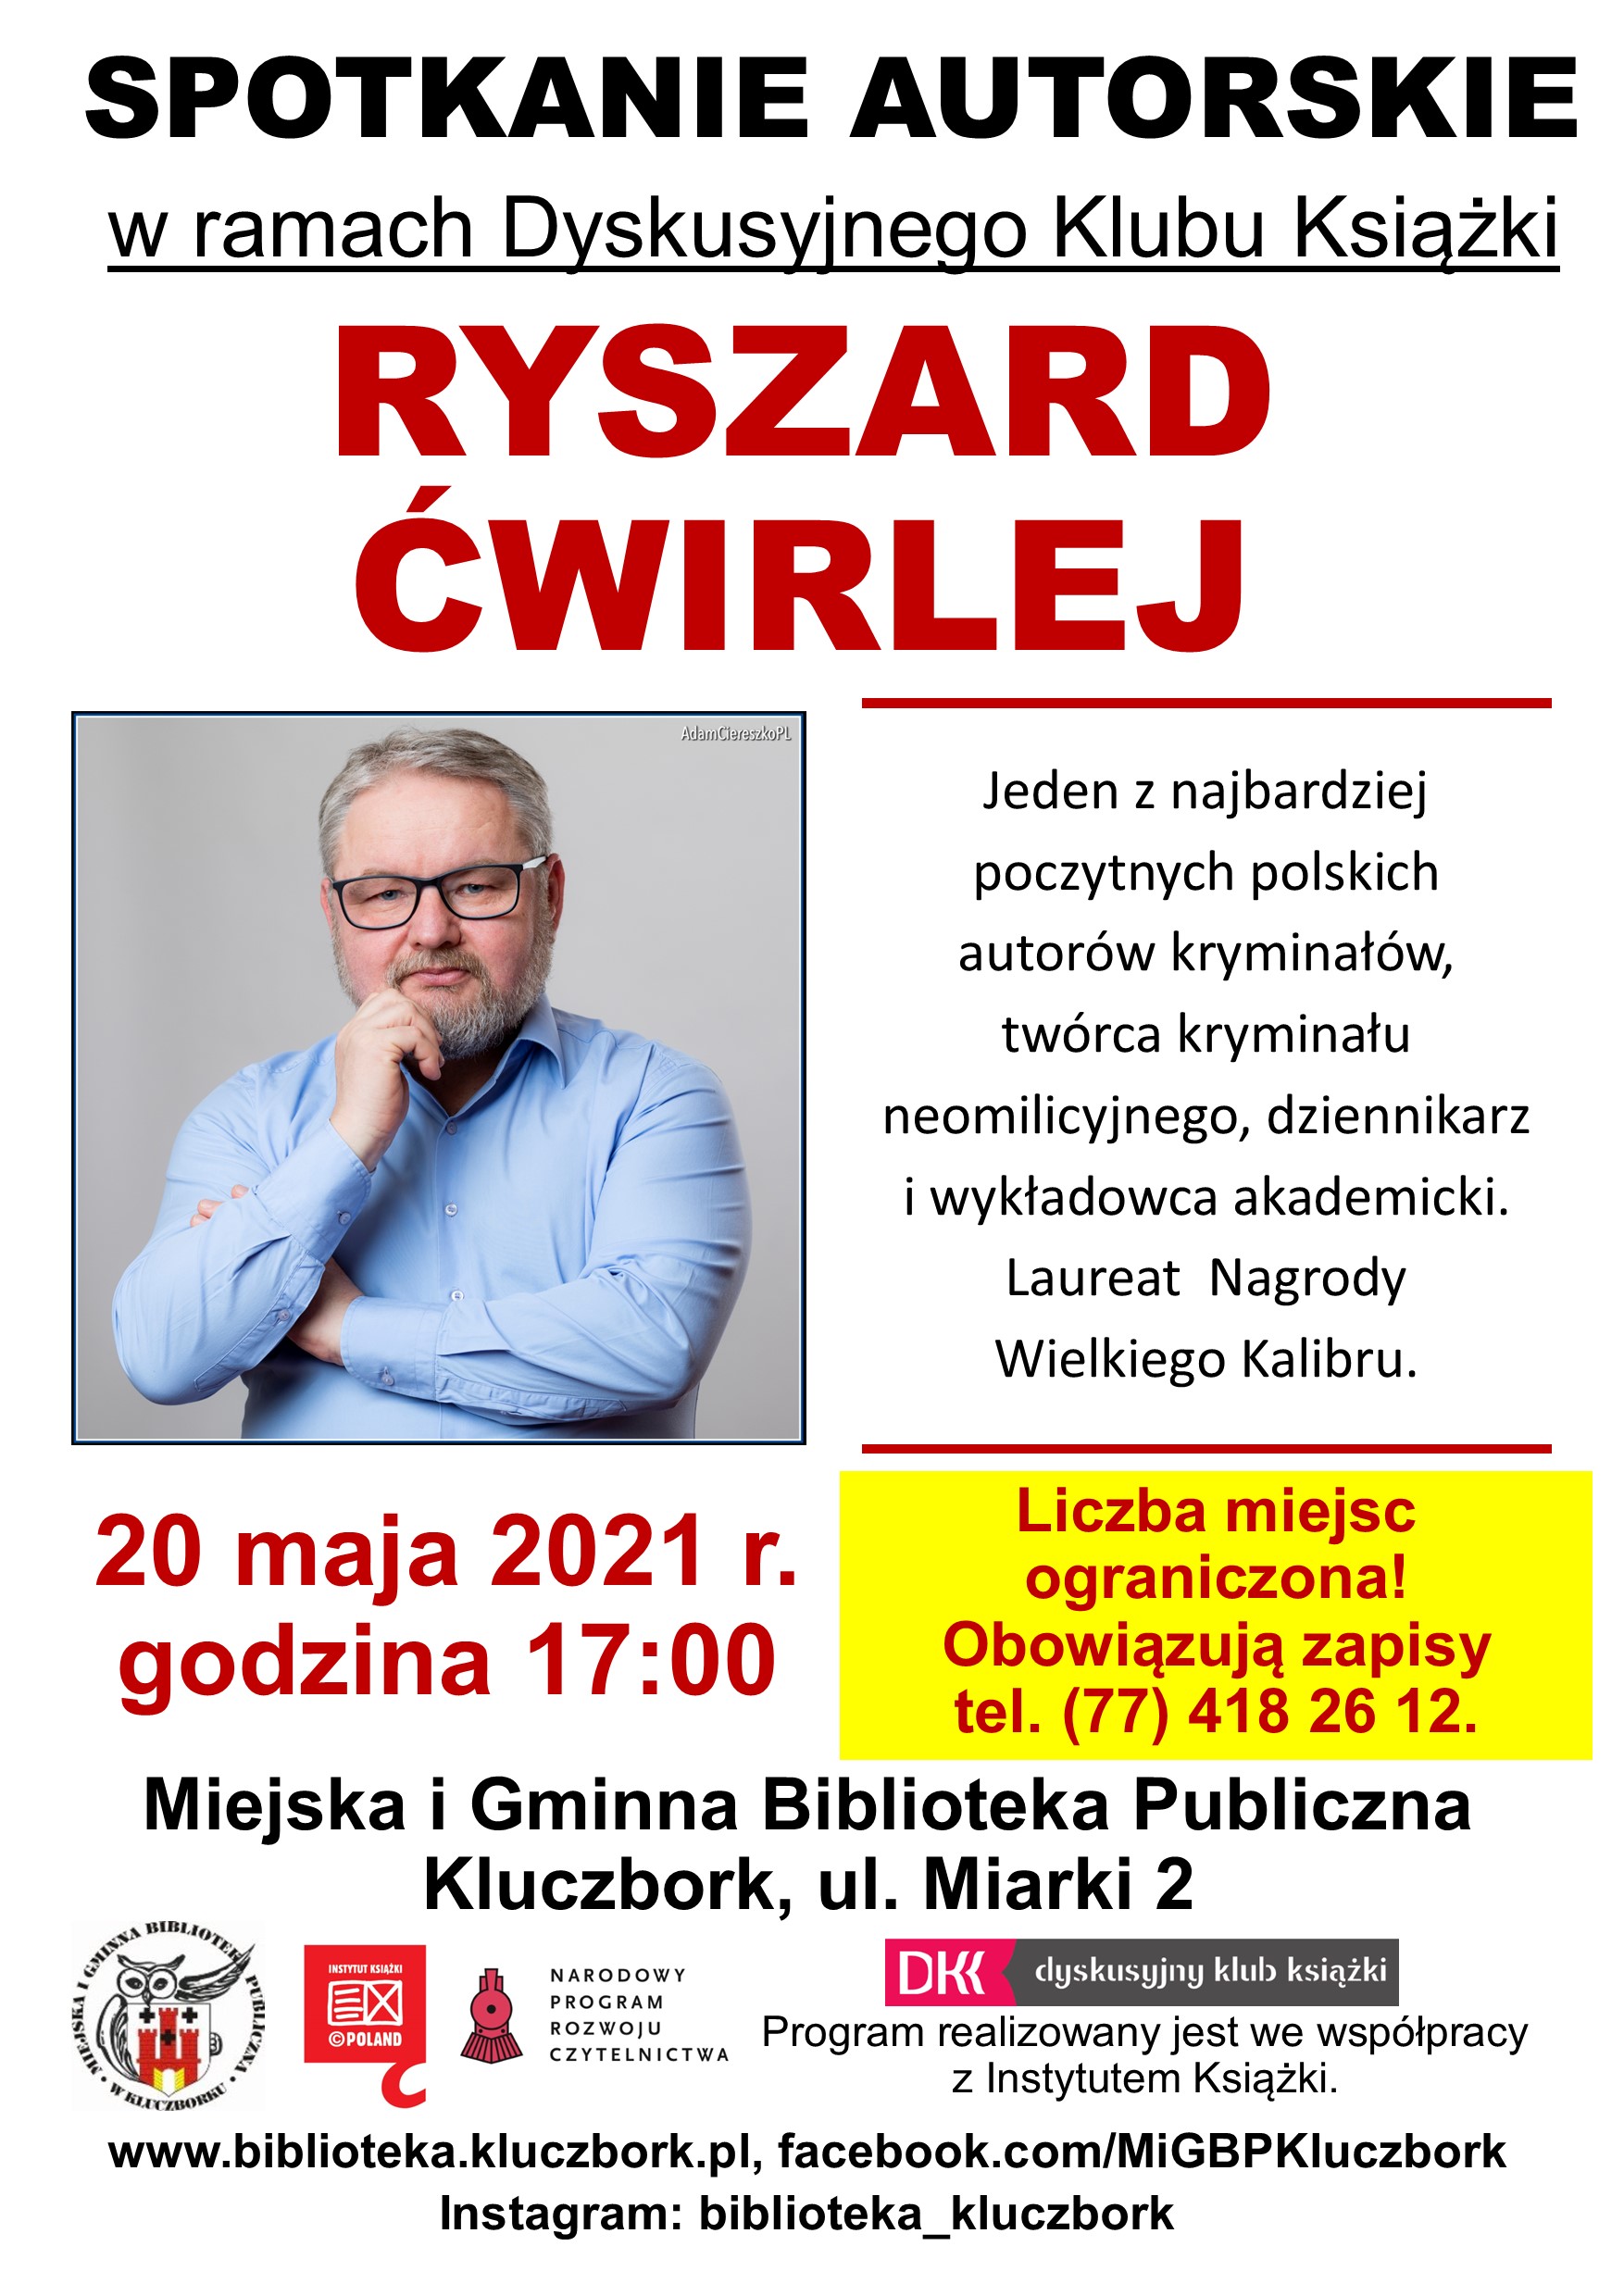 Spotkanie autorskie z Ryszardem Ćwirlejem w bibliotece